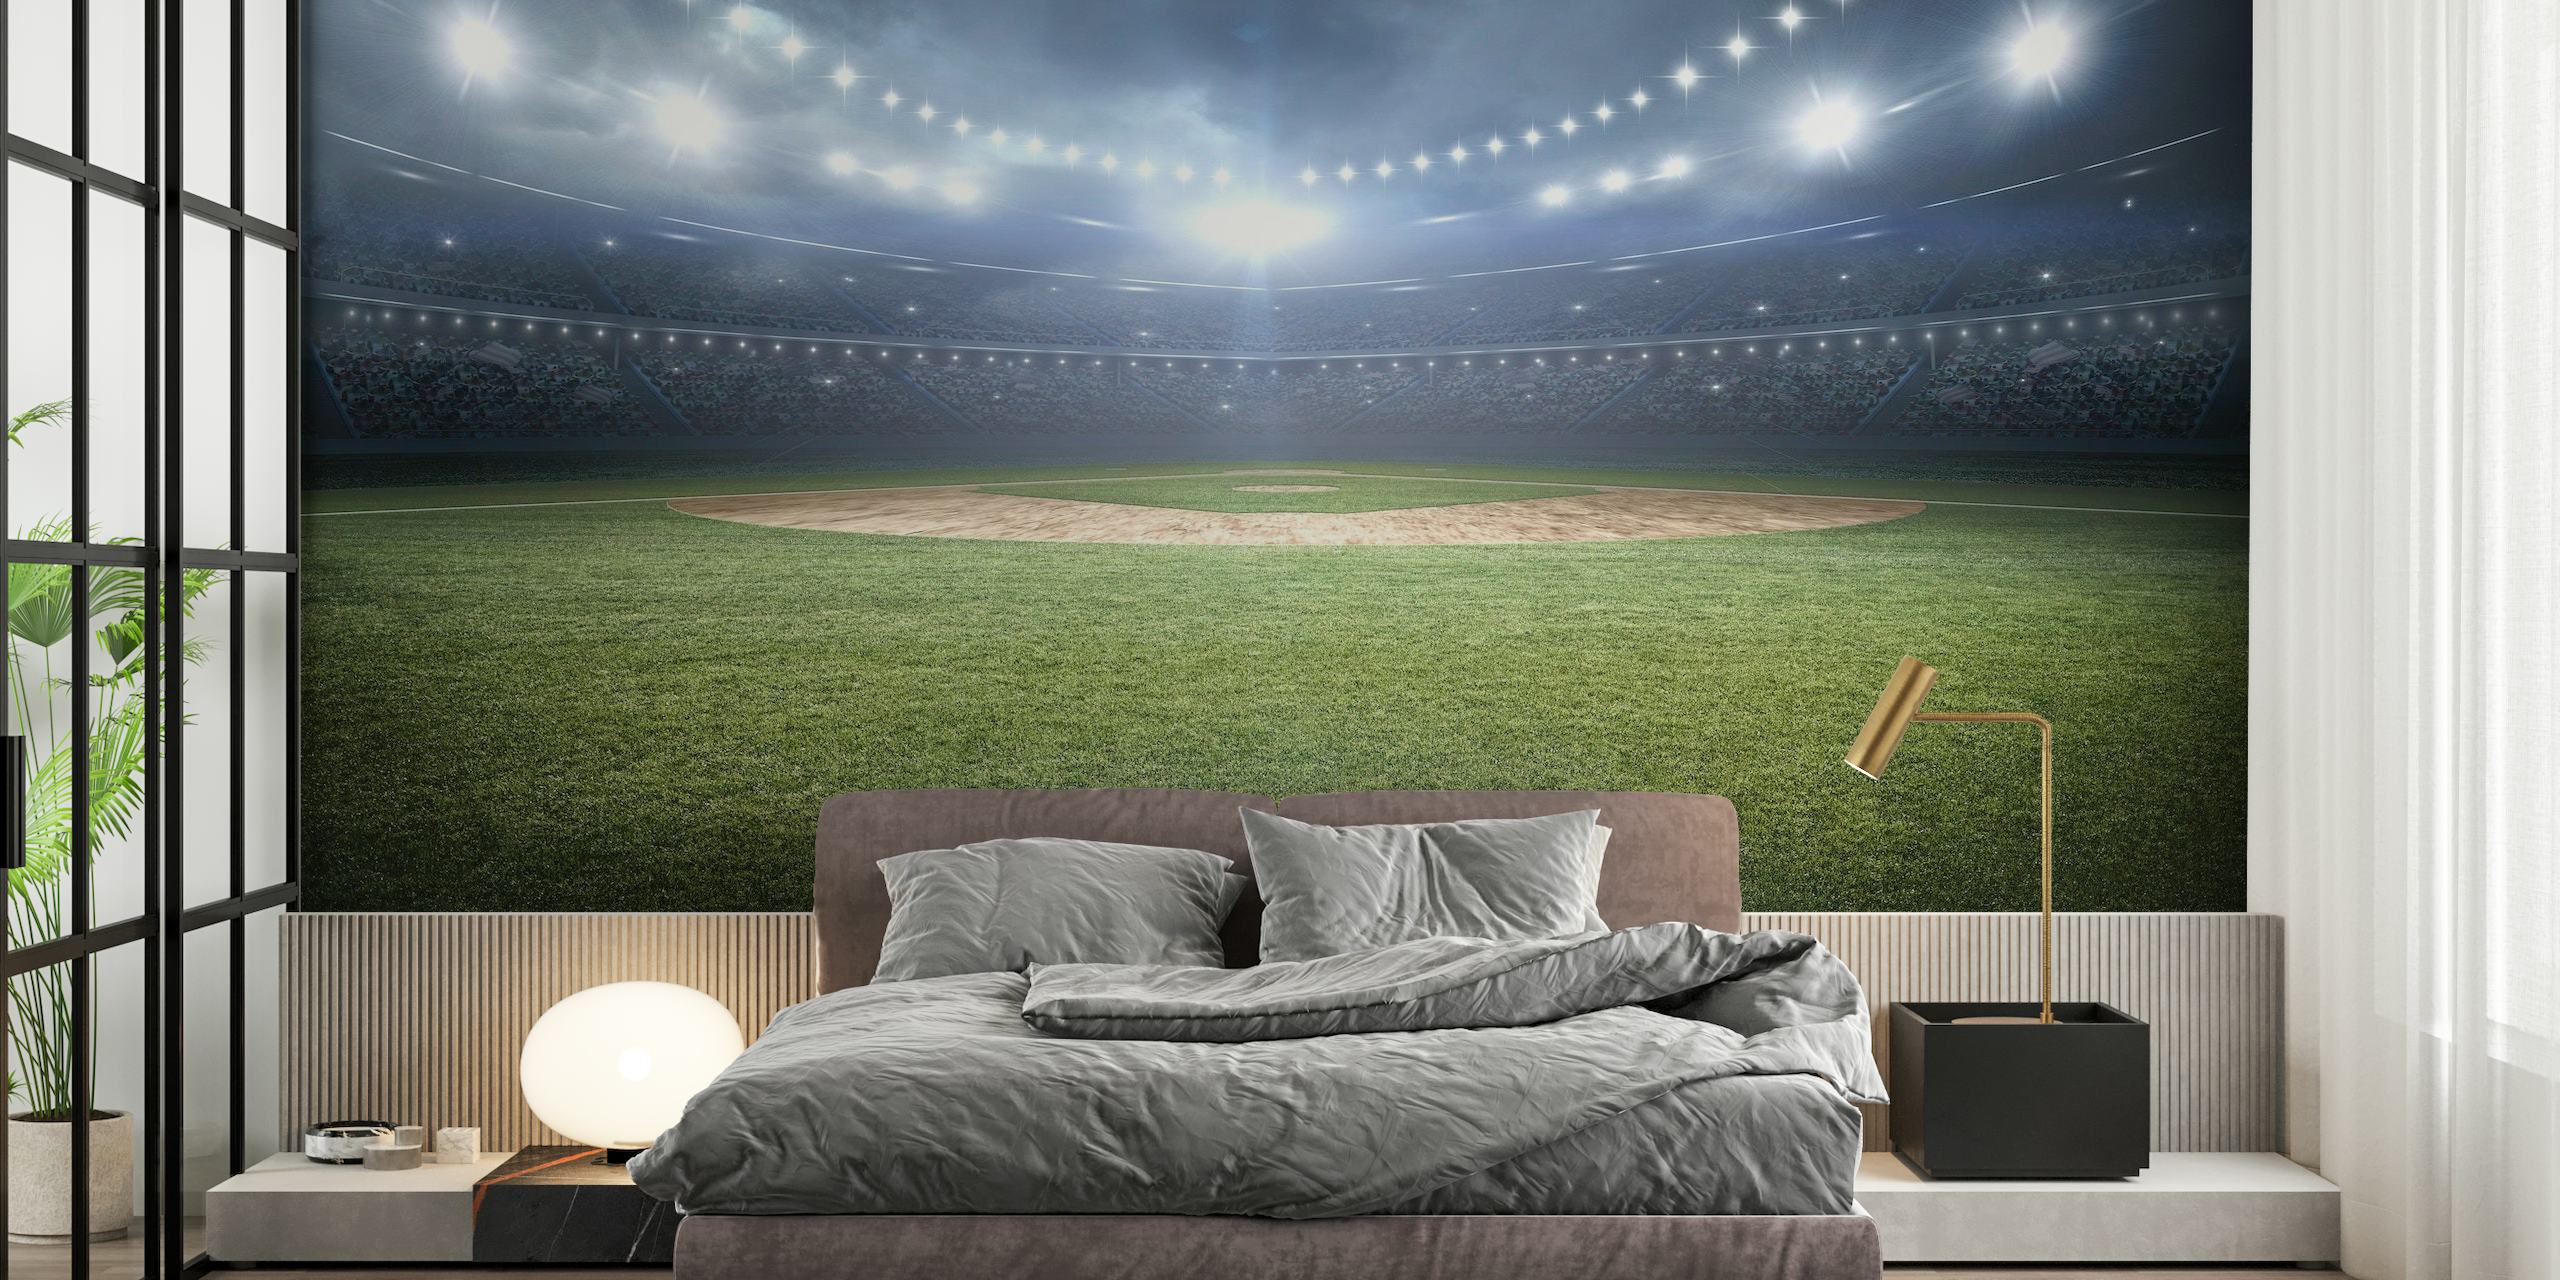 Mural panorámico de un estadio de béisbol por la noche con luces iluminadas brillando sobre el campo